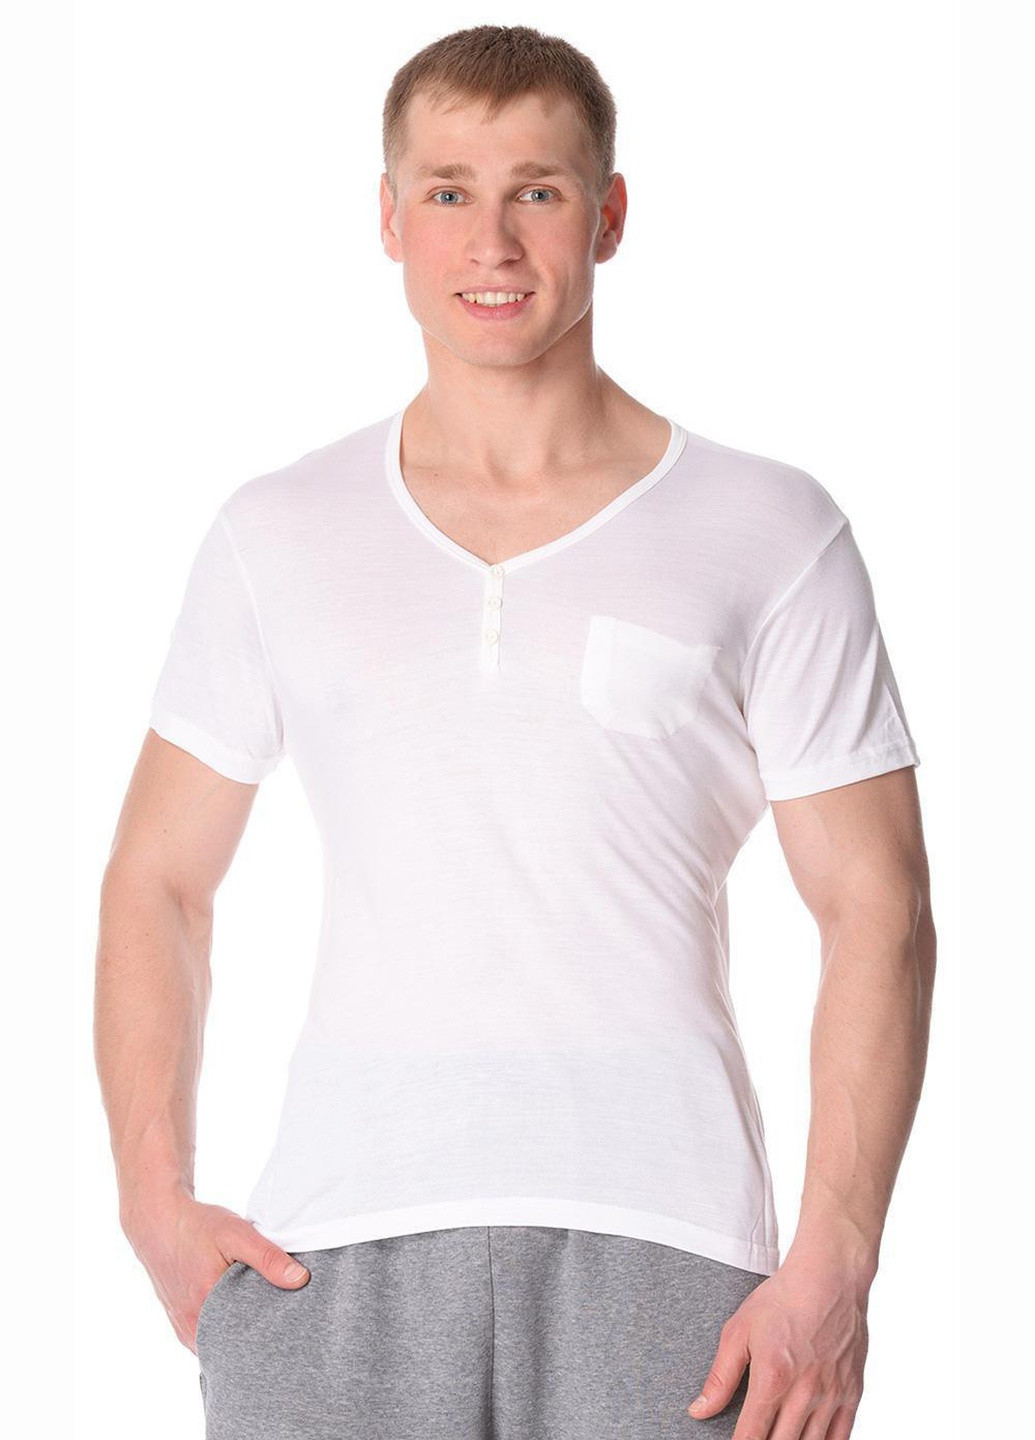 Біла футболка чоловіча infiniti s білий 755 Cornette